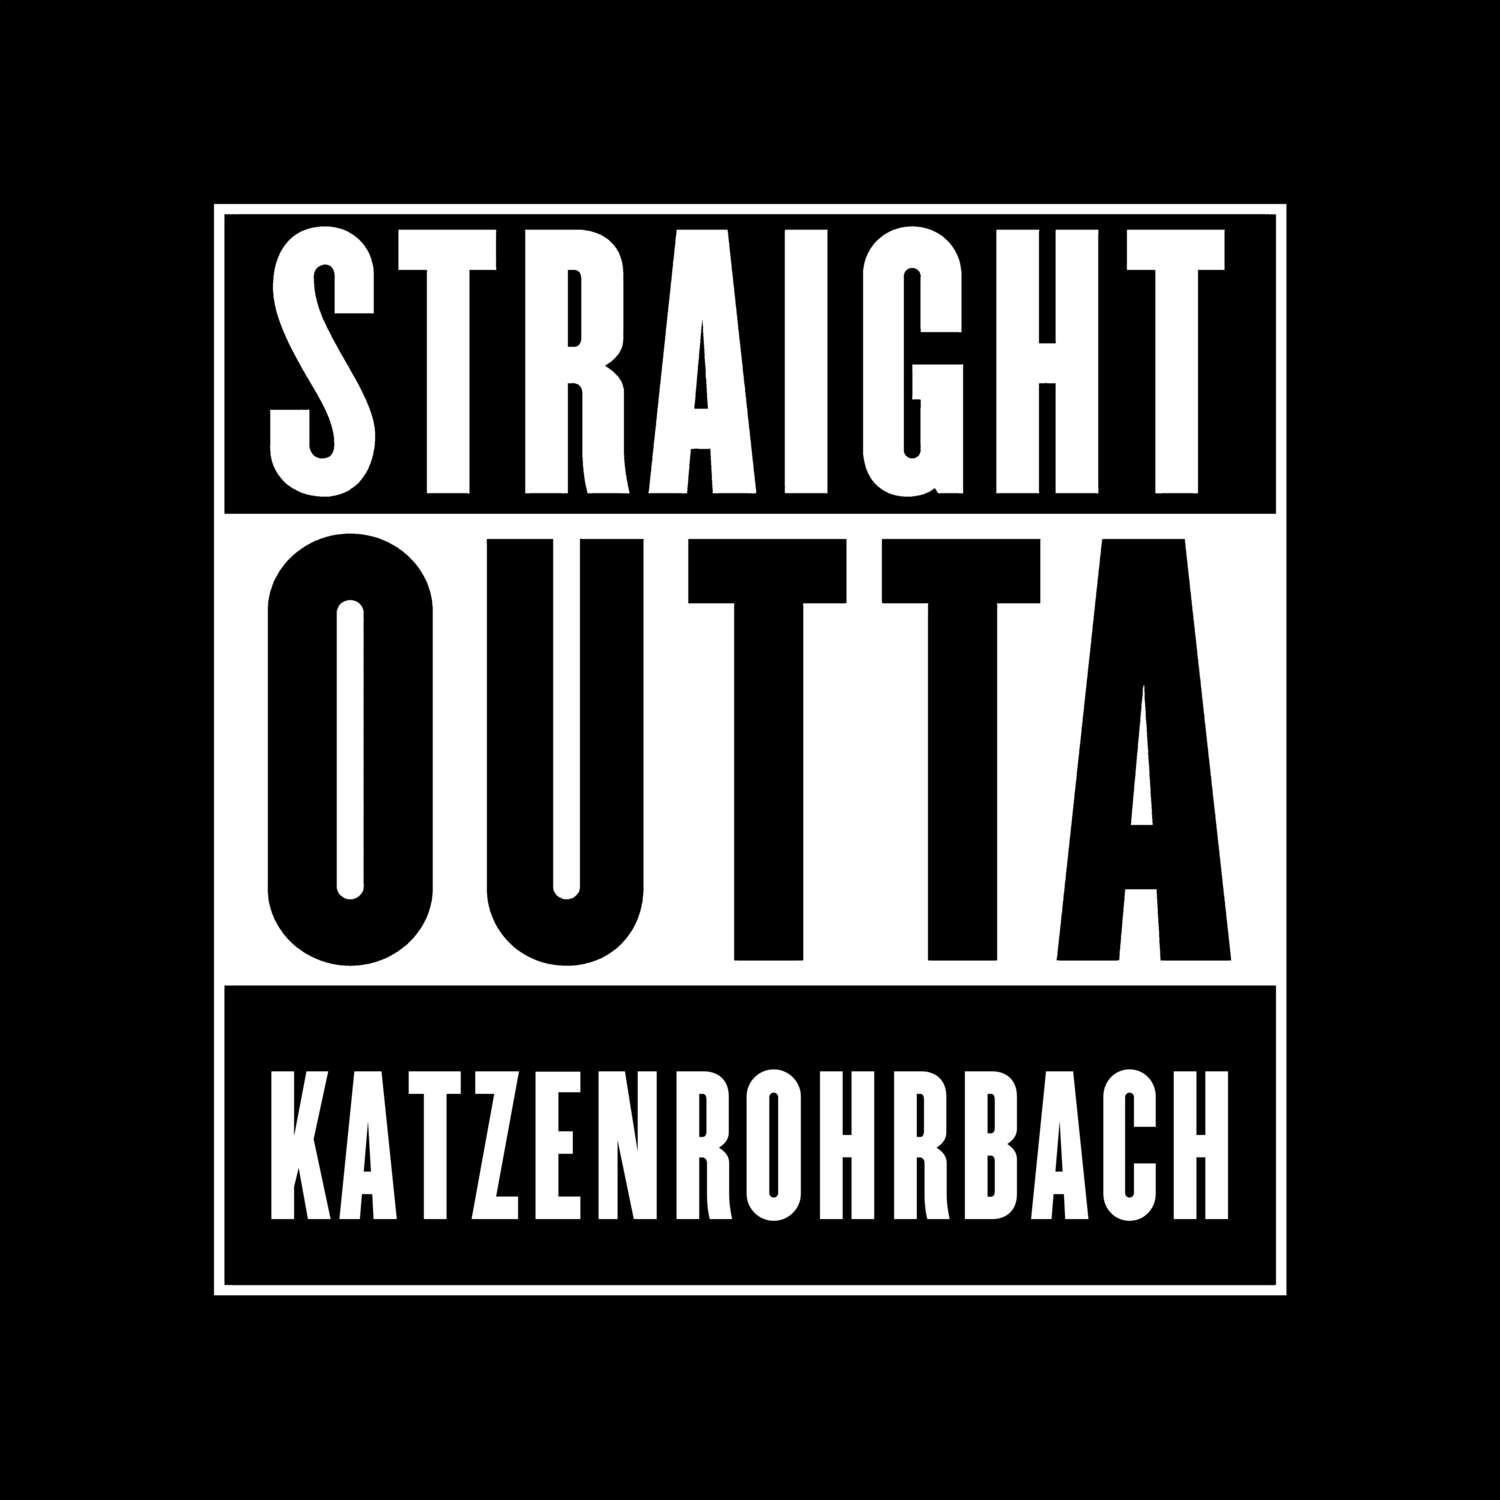 Katzenrohrbach T-Shirt »Straight Outta«